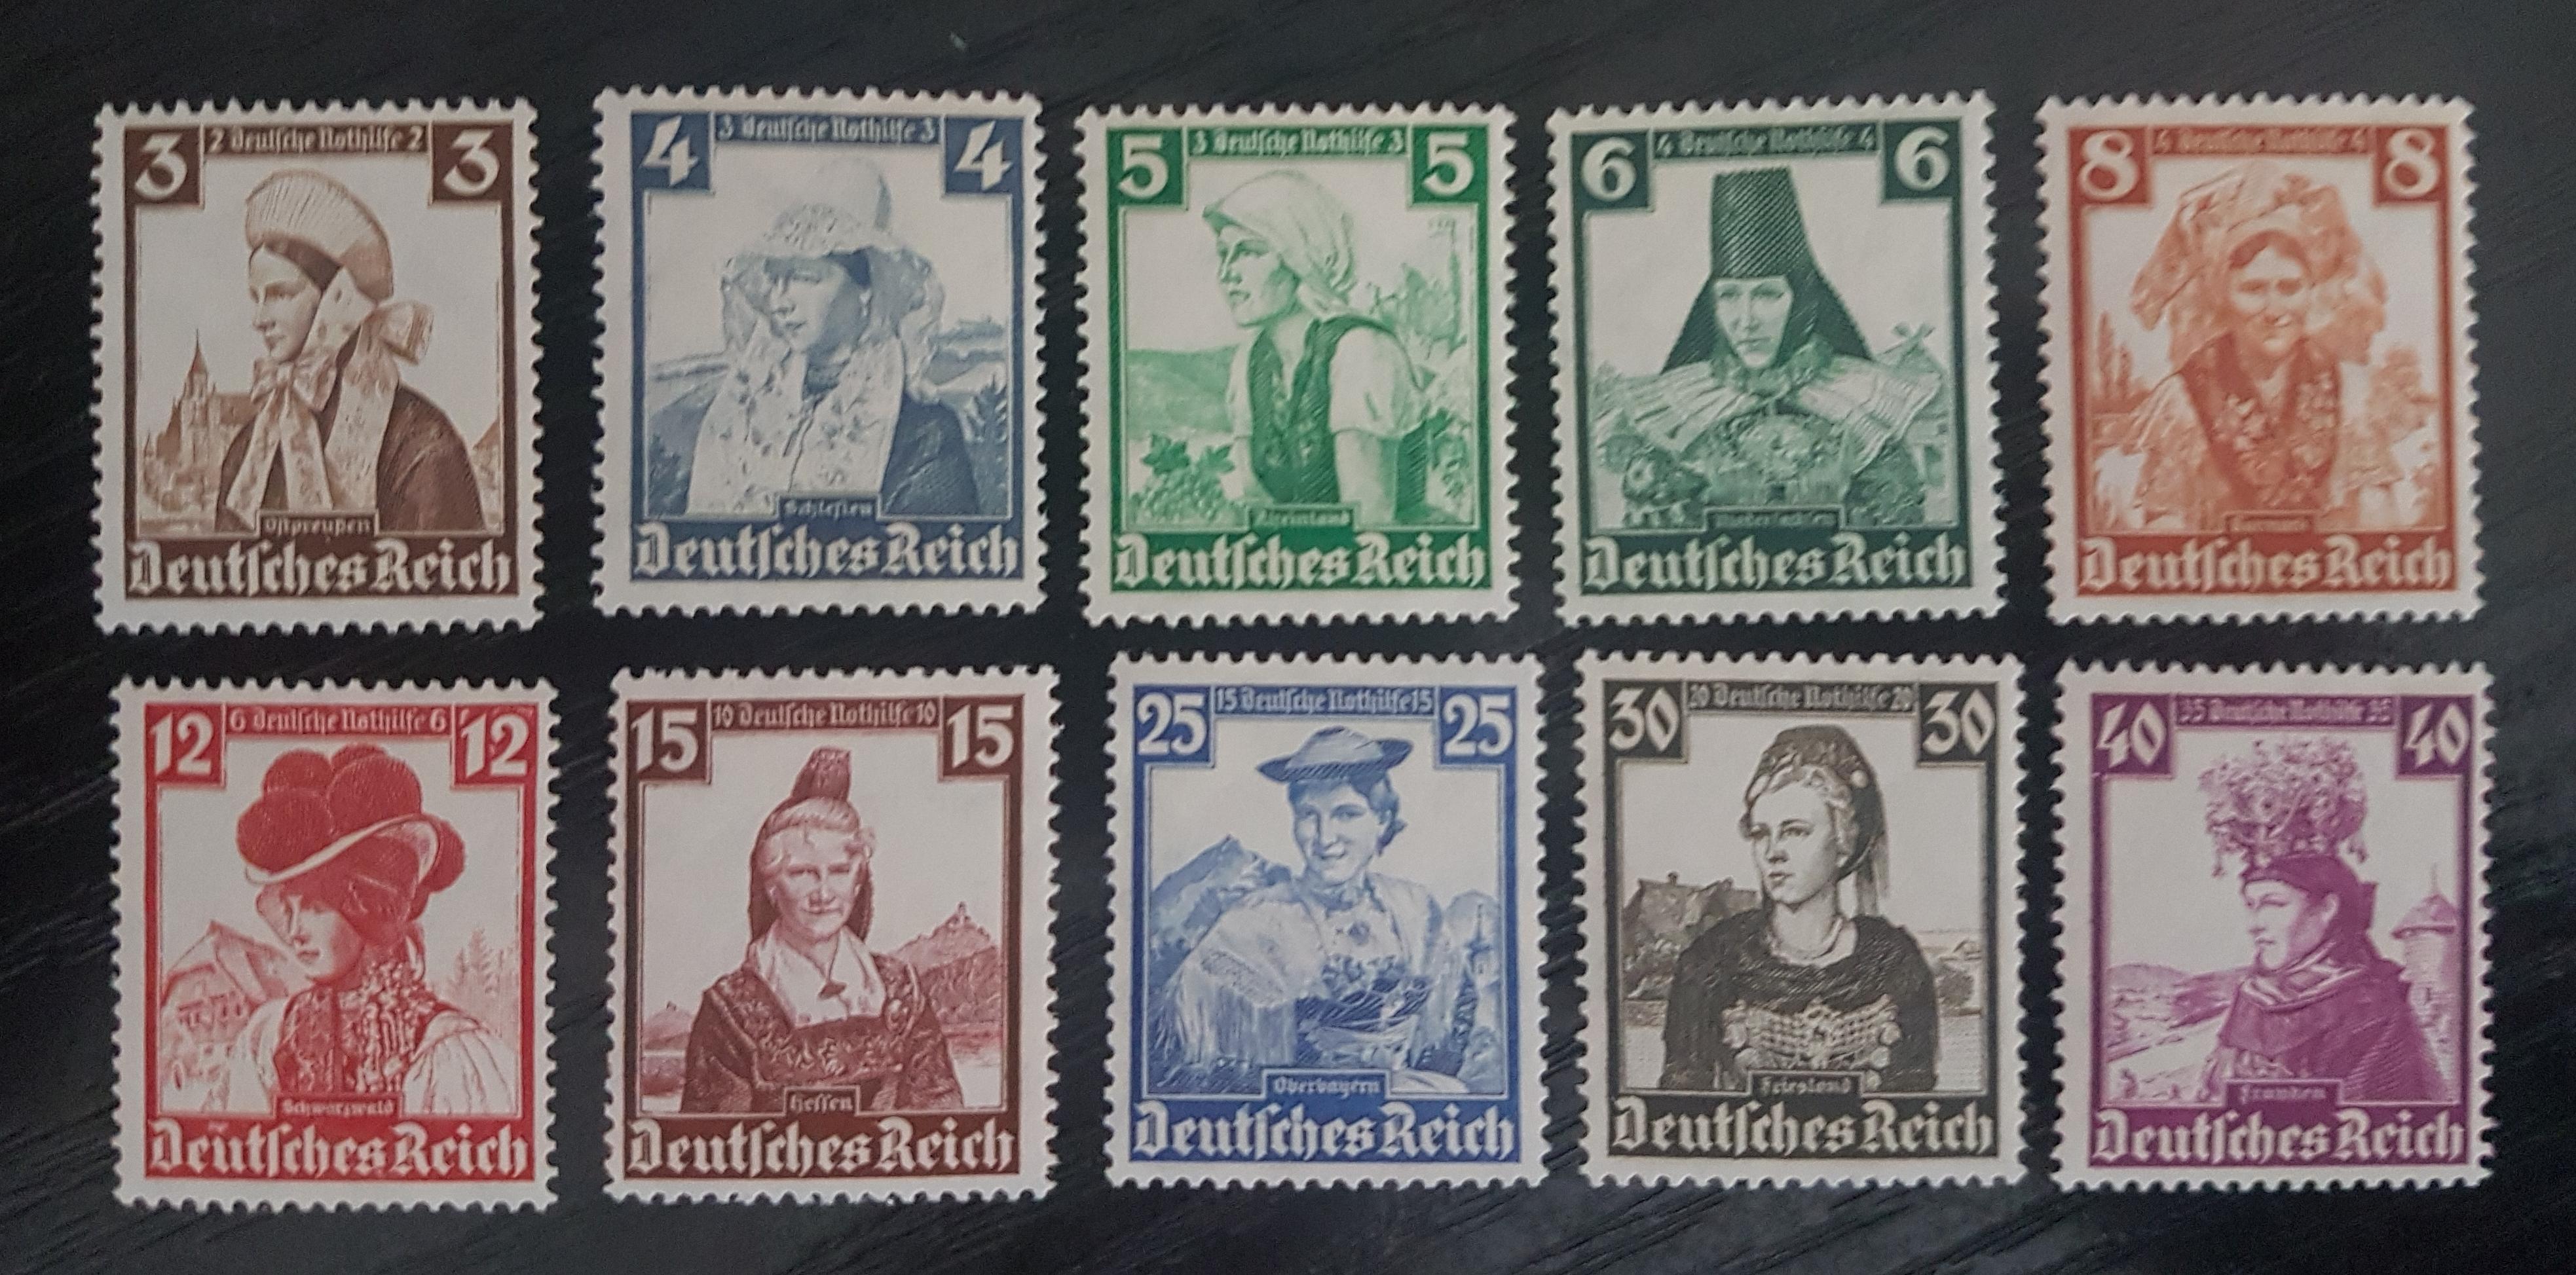 Купить марки германии. Почтовая марка Deutsches Reich 3. Почтовая марка с Гитлером Deutsches Reich. Марки Германия Рейх 1935.